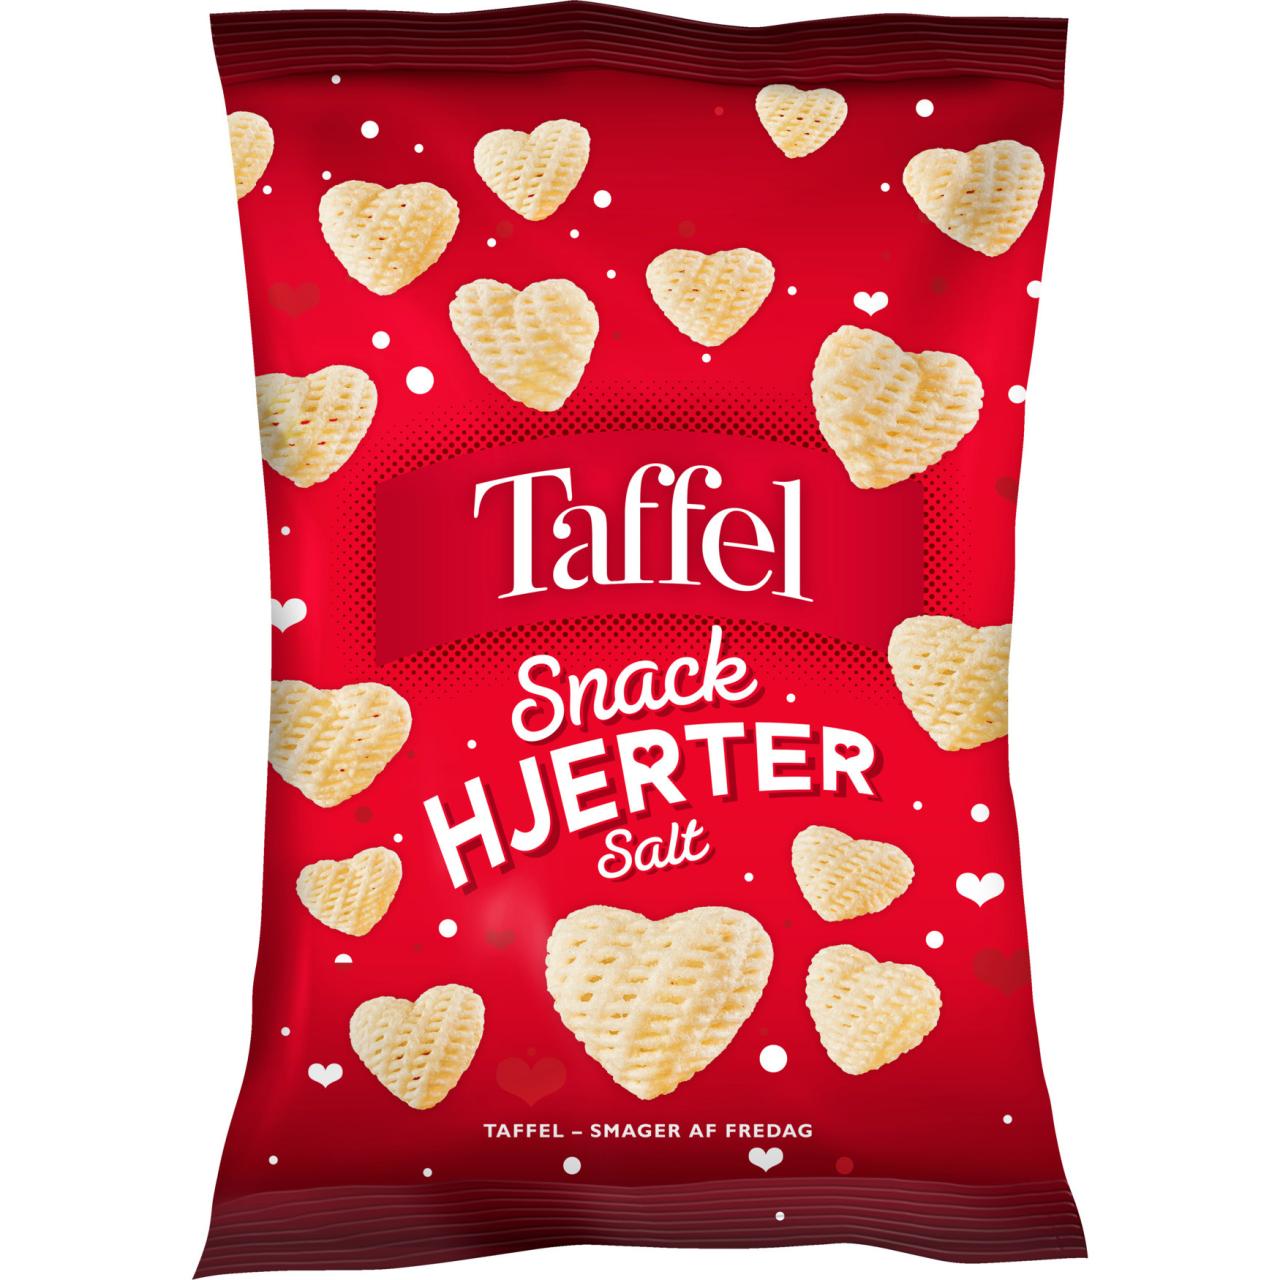 Taffel Snack Hjerter Salt 110g